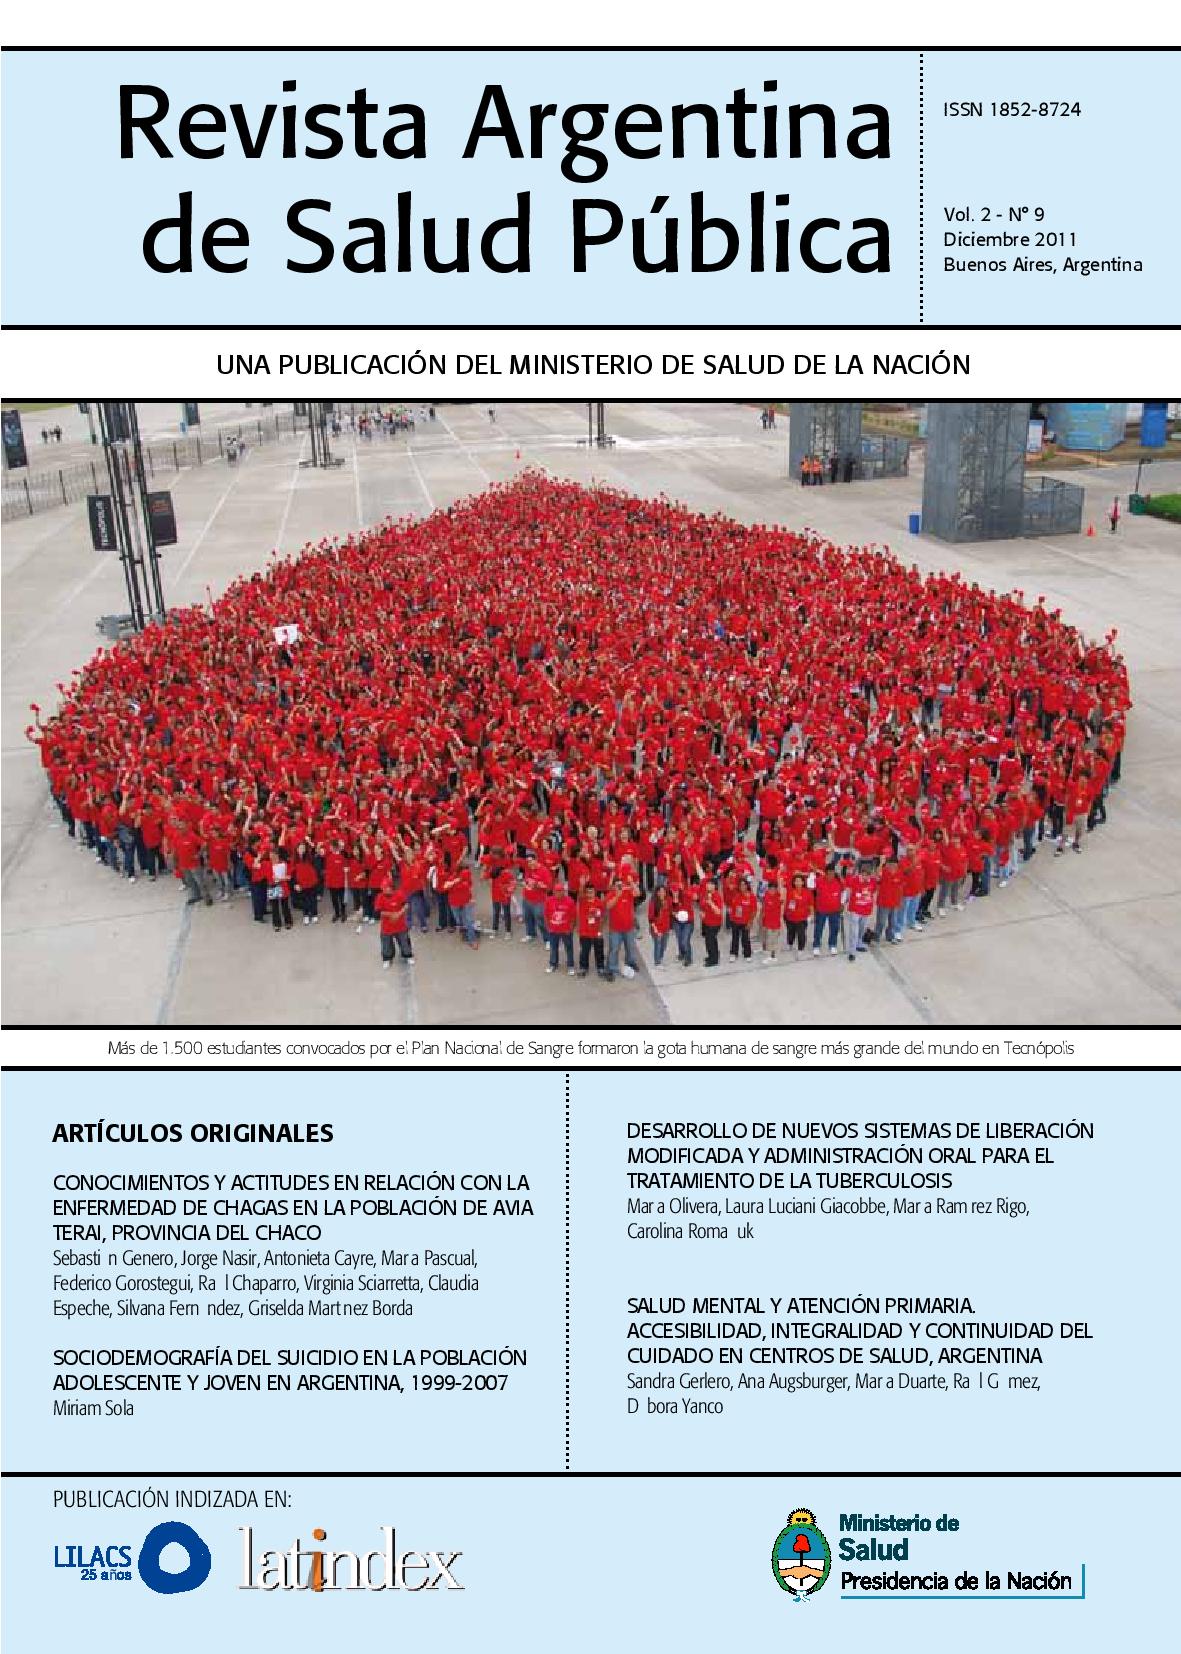 					View Vol. 2 No. 9 (2011): Revista Argentina de Salud Pública
				